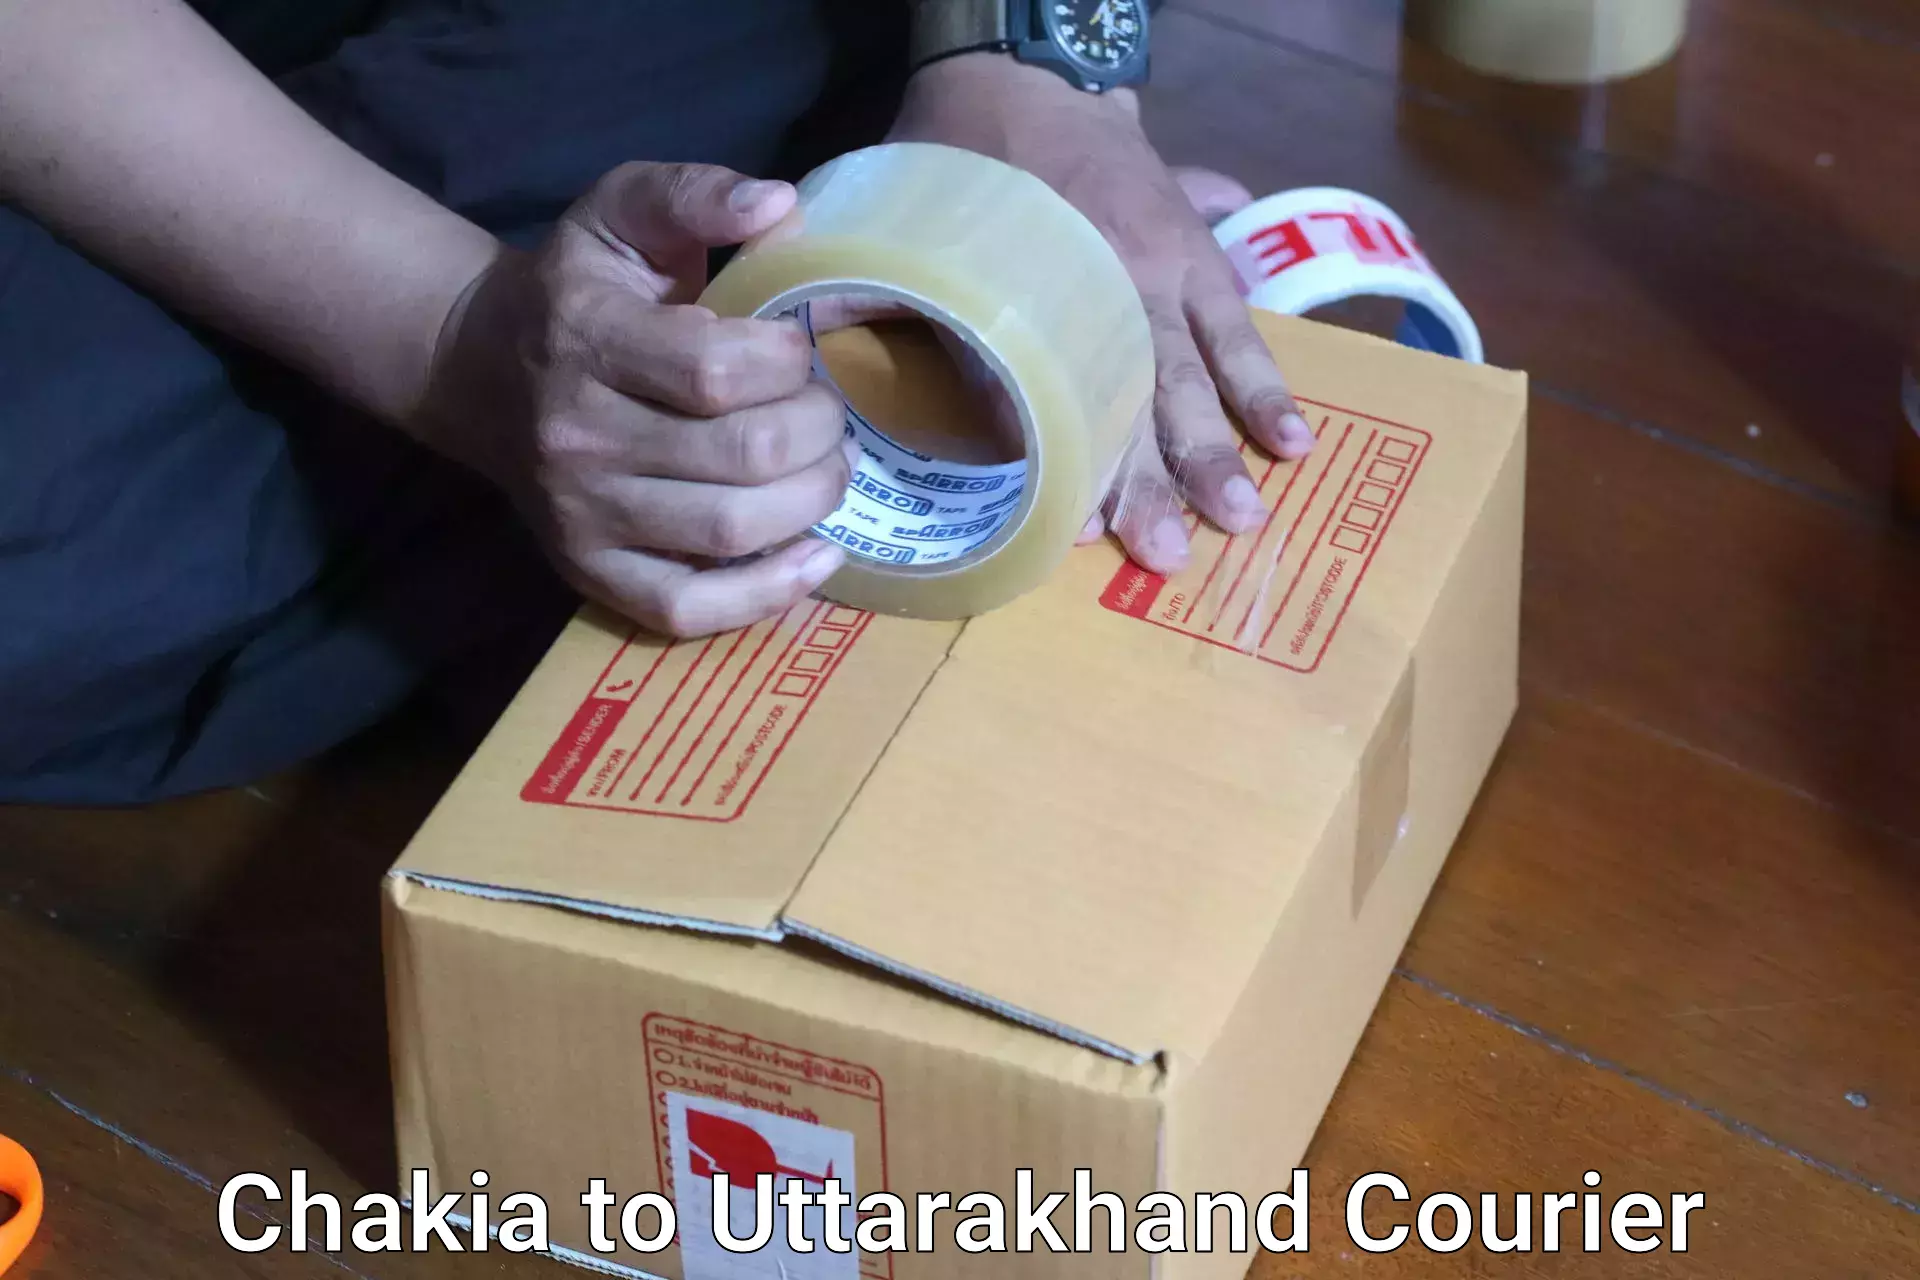 Luggage shipment processing Chakia to Uttarakhand